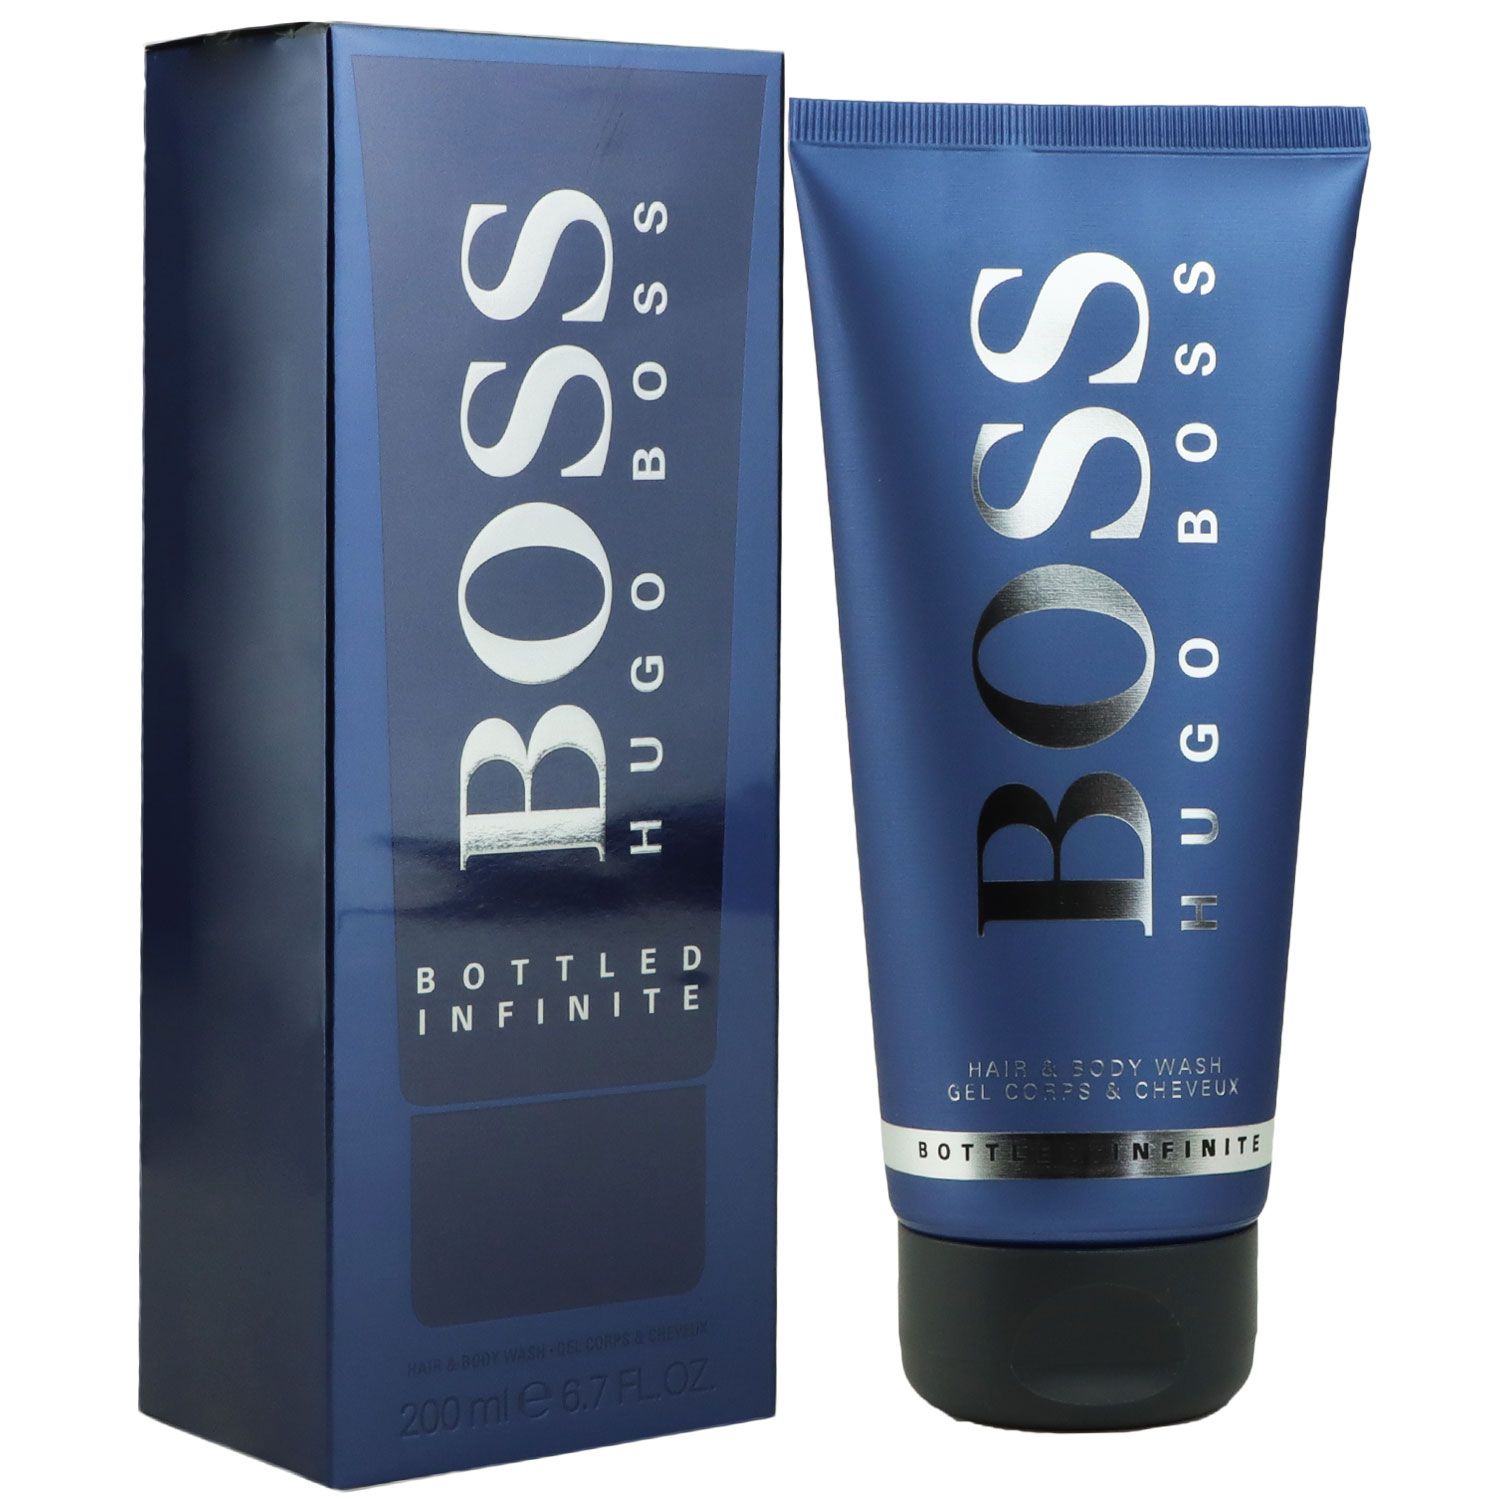 Wash & Dusc Bottled Infinite Hugo ml Boss Hair 200 Body